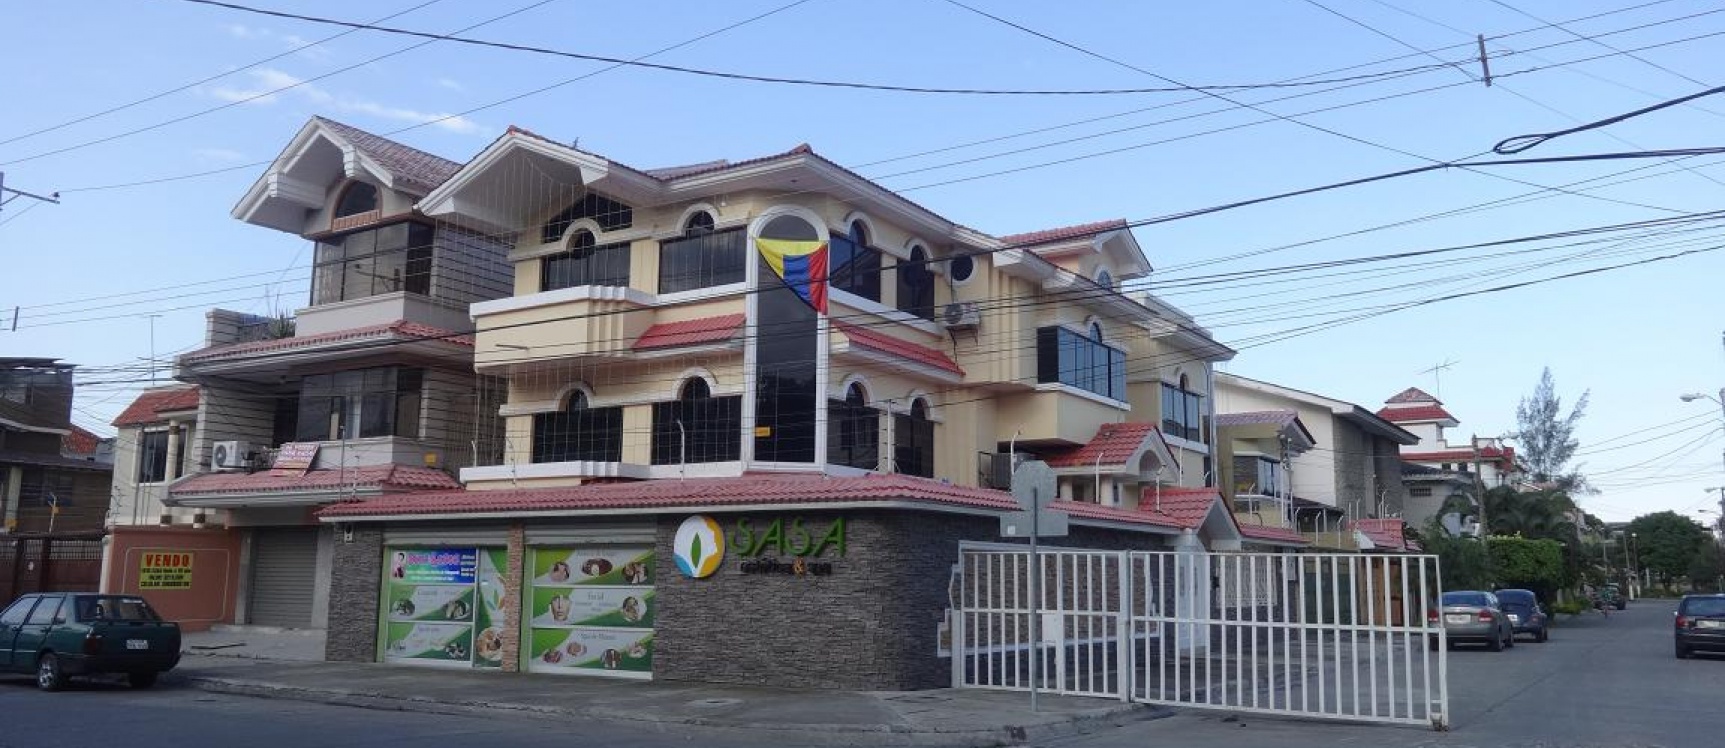 GeoBienes - La Garzota, vendo casa esquinera con Locales Comerciales - Plusvalia Guayaquil Casas de venta y alquiler Inmobiliaria Ecuador